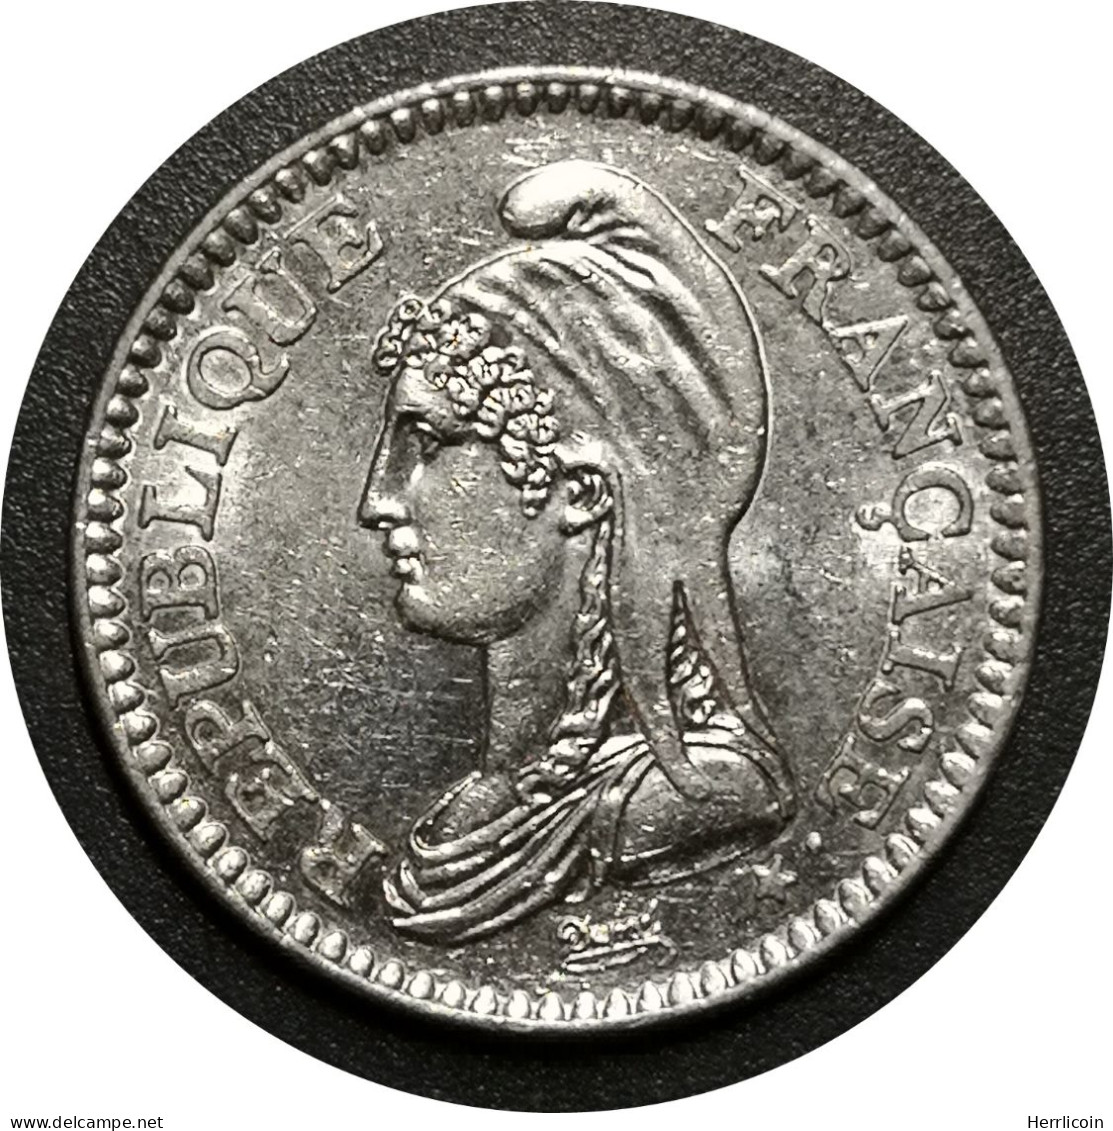 Monnaie France - 1992 - 1 Franc République Nickel - Commemoratives